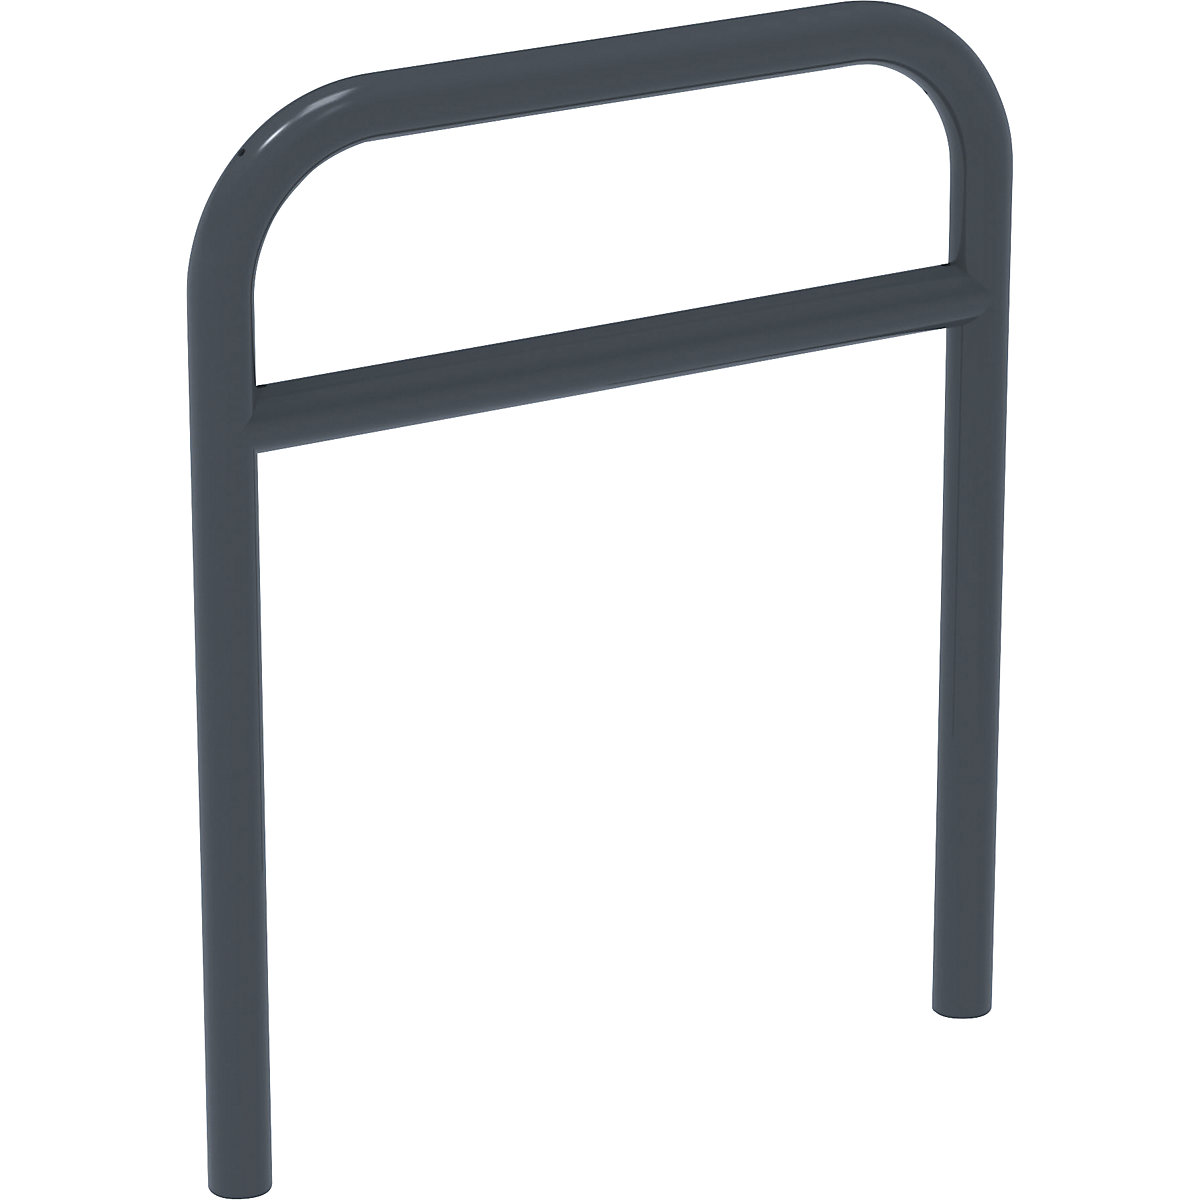 Aanleunbeugel met dwarsbalk – PROCITY, Ø 50 mm, voor in gegoten beton, grijs-3